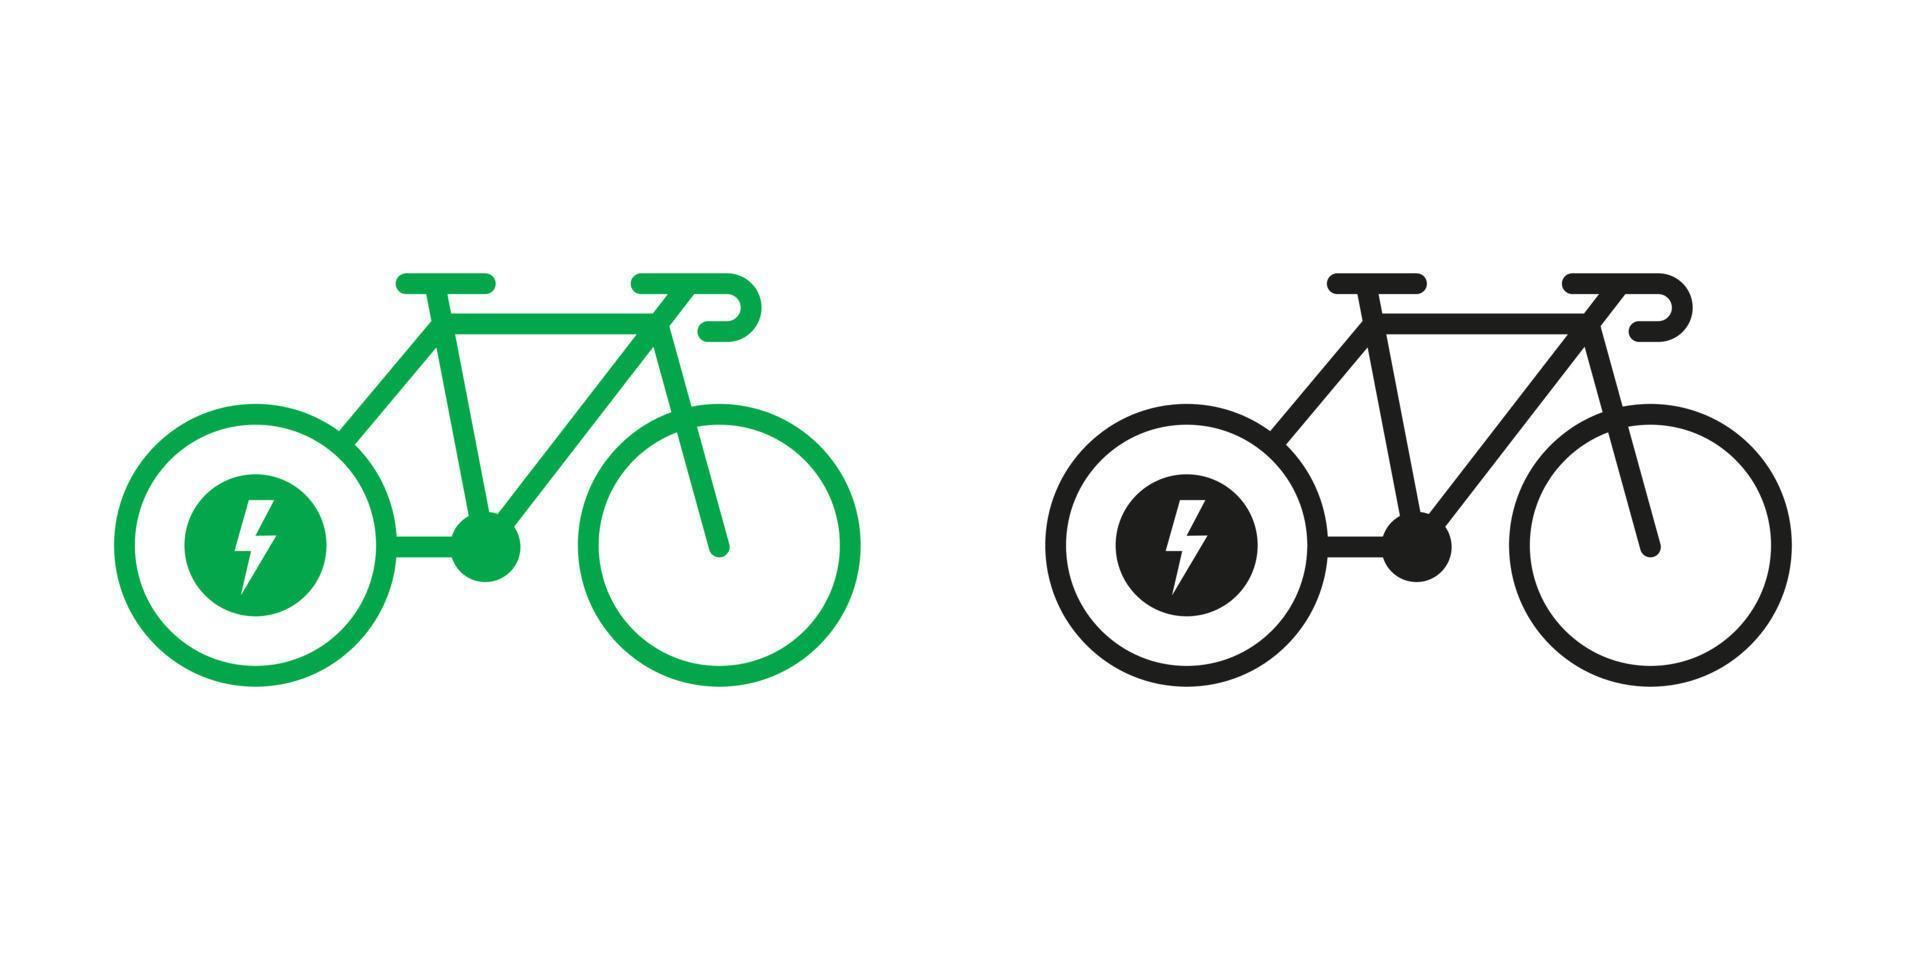 eléctrico bicicleta, ecológico transporte en electrónico energía verde y negro glifo pictograma colocar. eco híbrido bicicleta iconos ebike signo. ecología electro poder silueta icono. aislado vector ilustración.